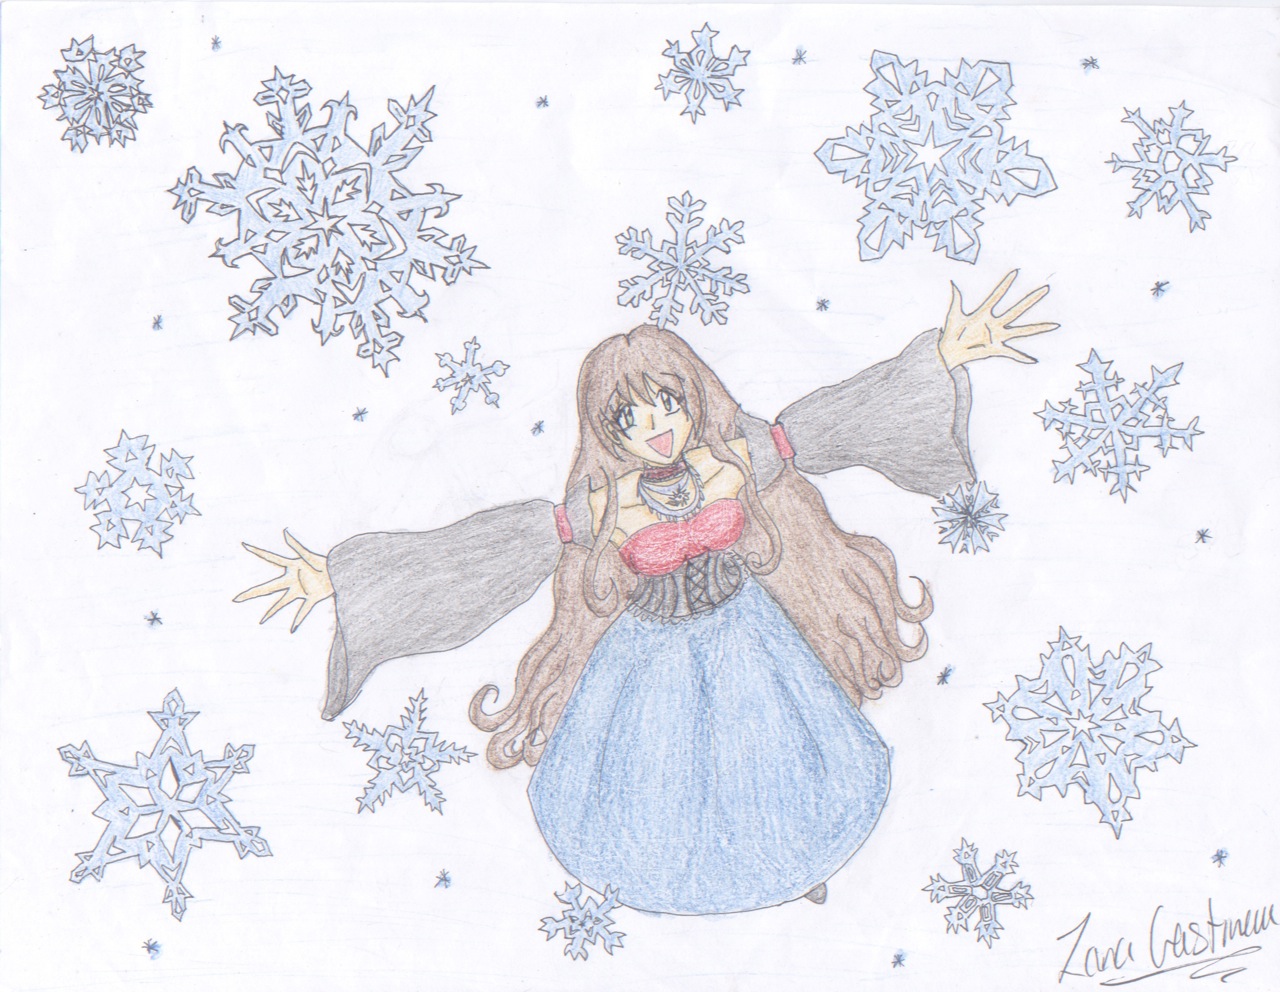 Winter Wonderland *Alexis_Hoheimer's contest* by Dementor